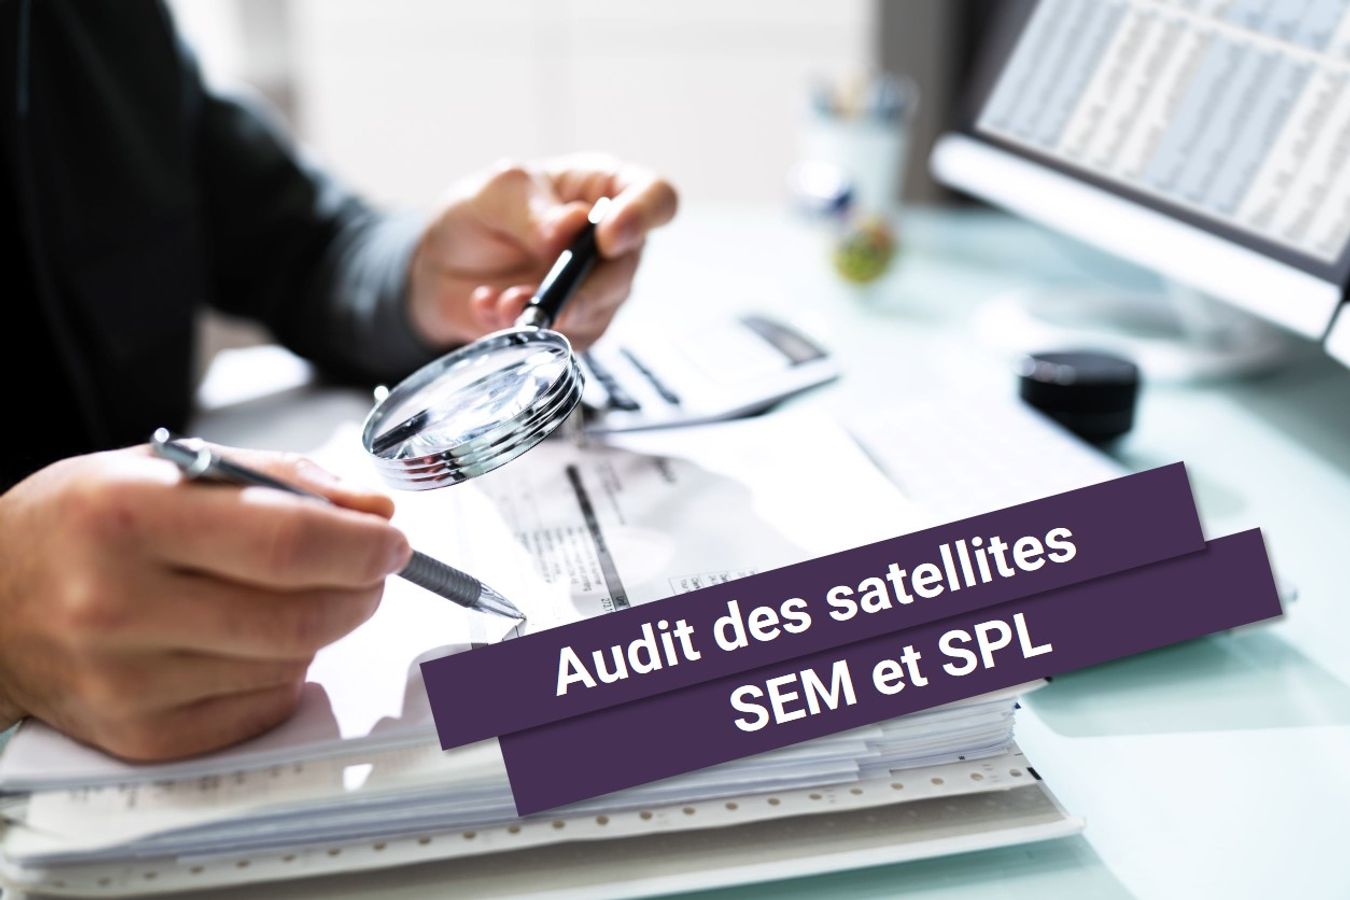 Audit des SEML et SPL : un outil de sécurisation juridique et d'optimisation des pratiques des collectivités territoriales actionnaires